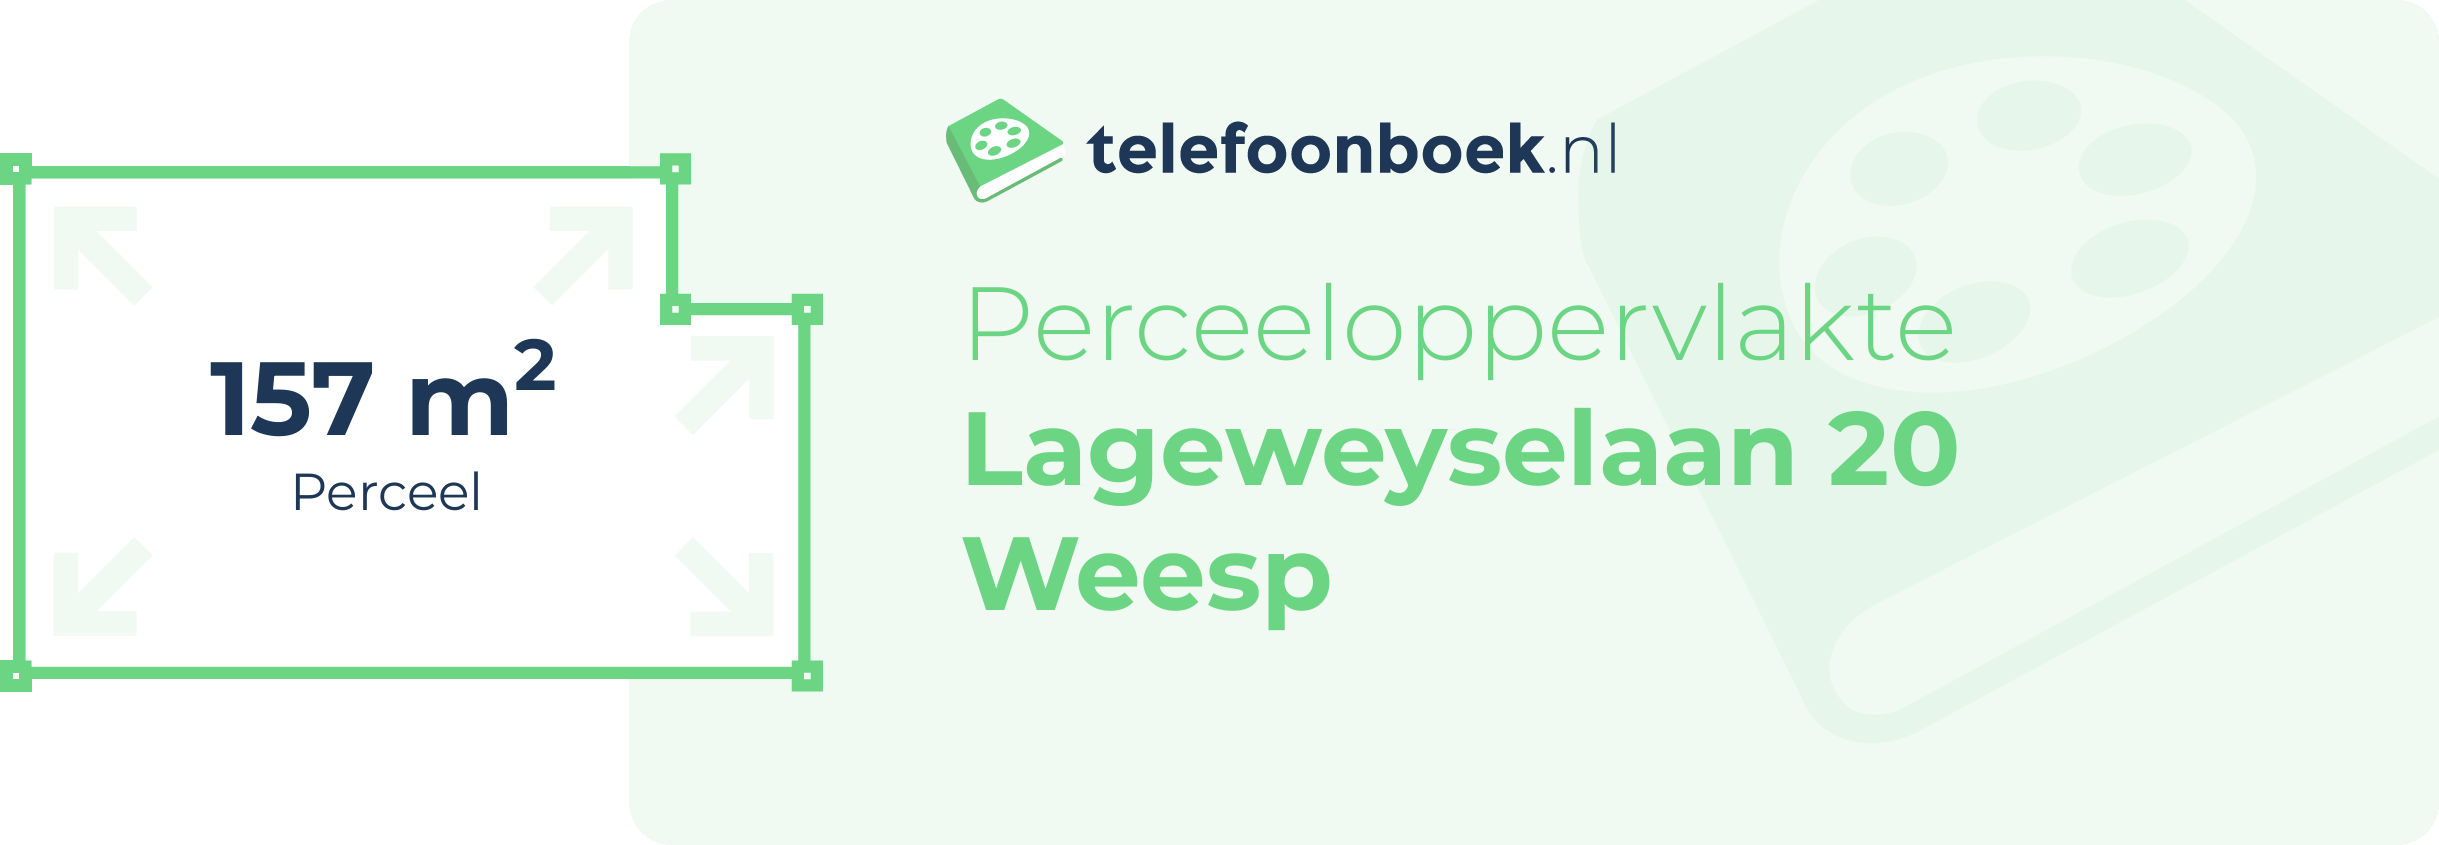 Perceeloppervlakte Lageweyselaan 20 Weesp